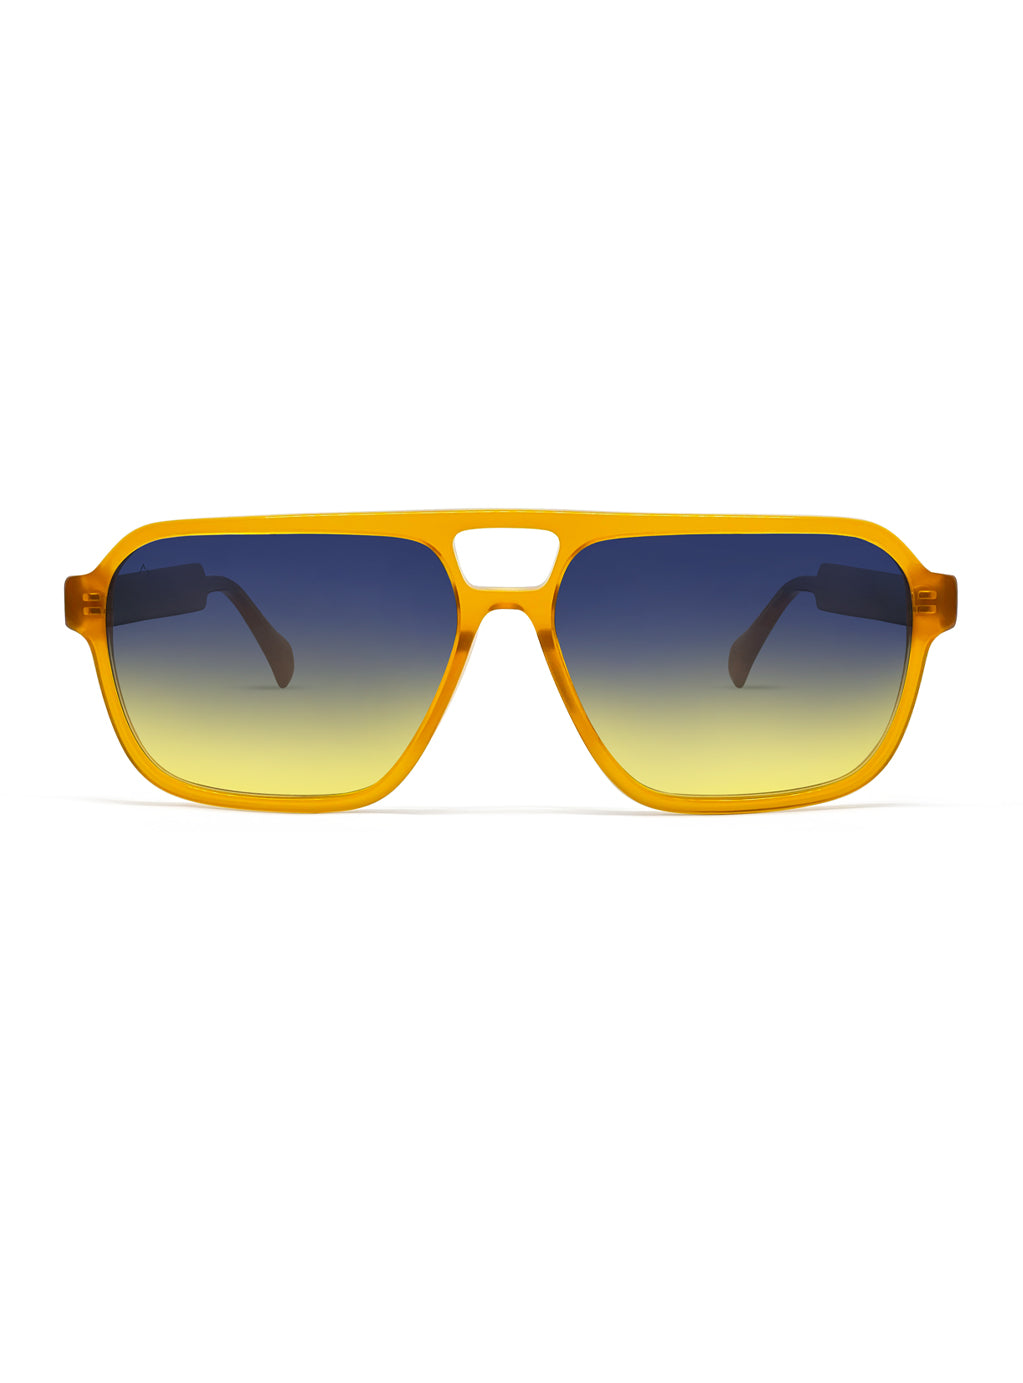 Double-B Orange with Blue/Yellow Gradient Lenses